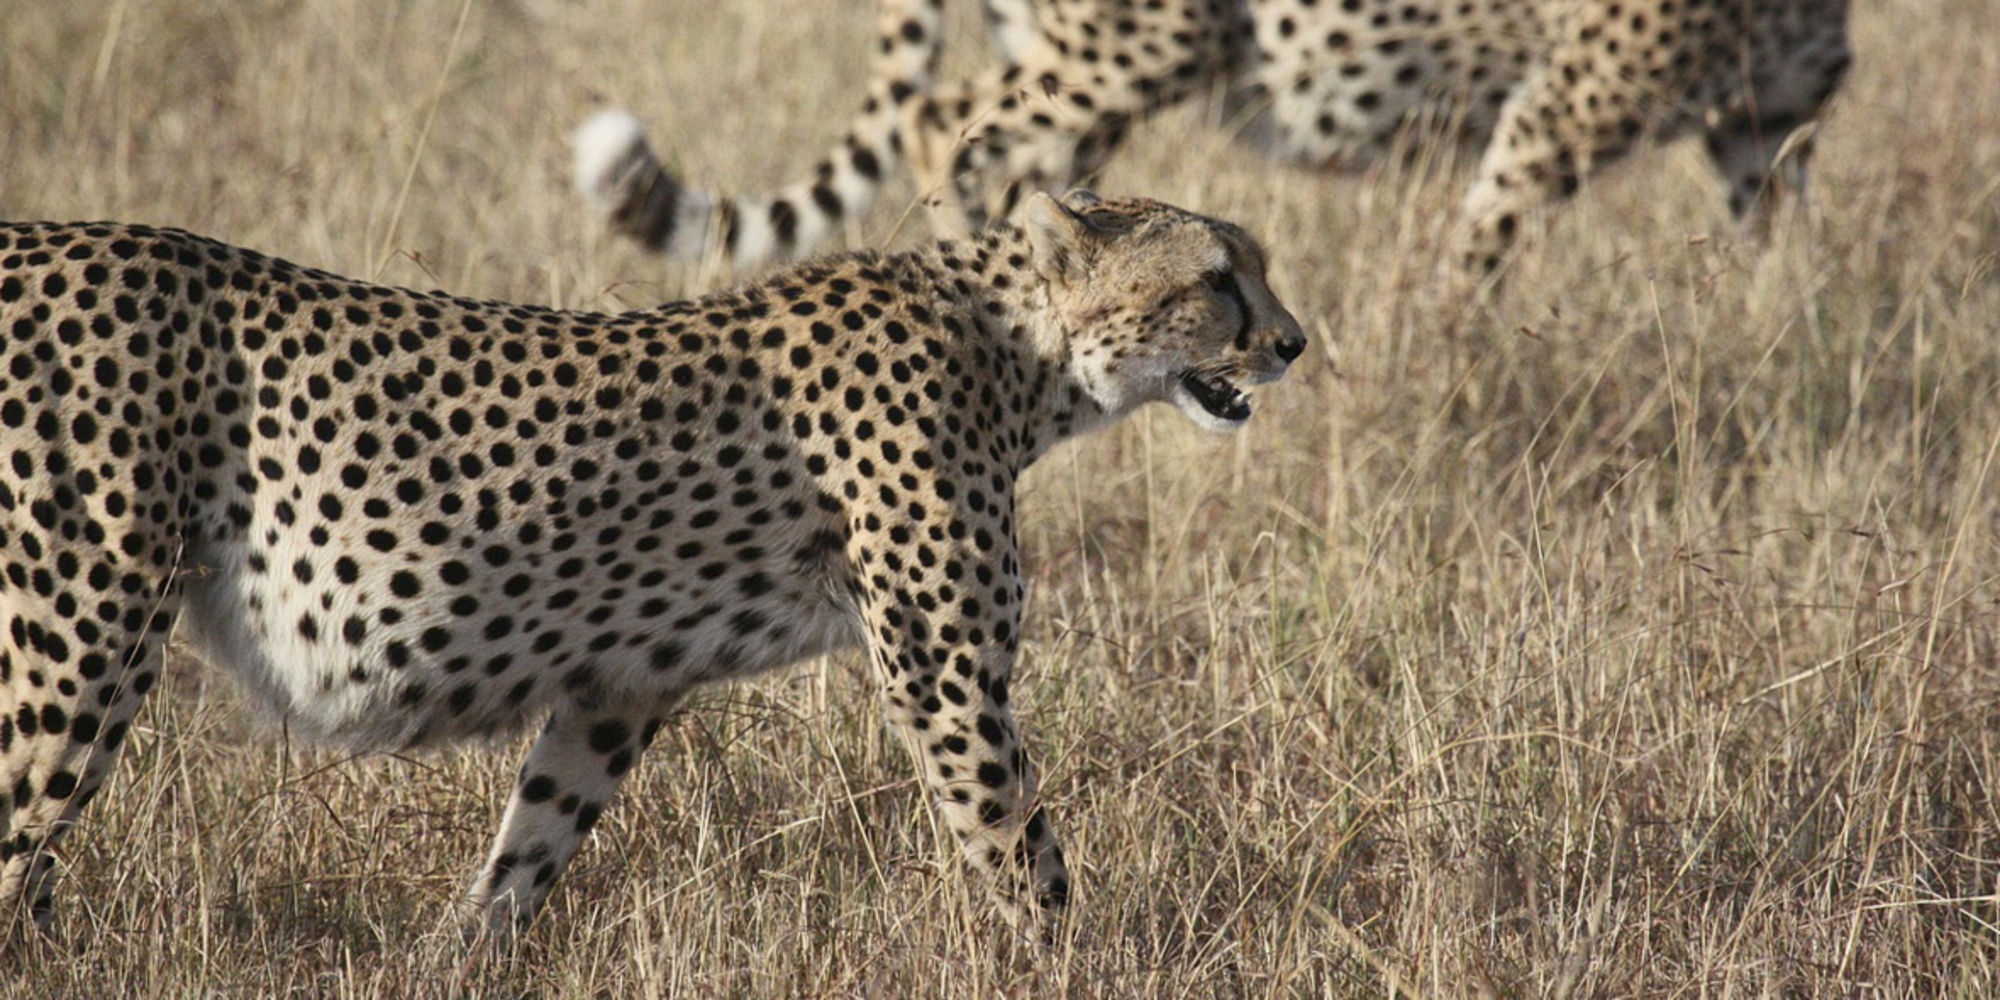 Freiwilligenarbeit in Namibia heißt Volunteering rund um Tierschutz und Wildlife.